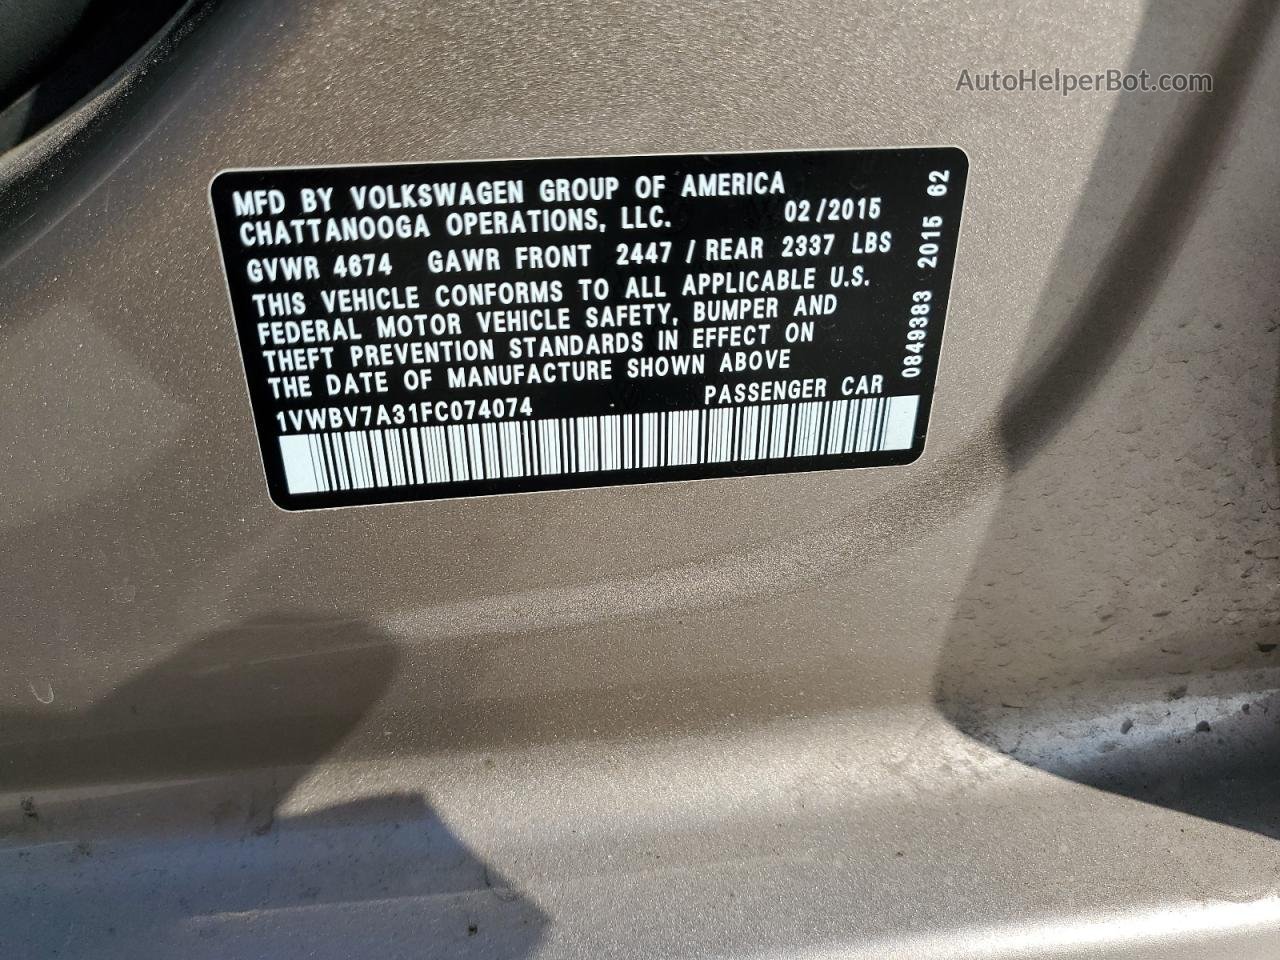 2015 Volkswagen Passat Se Желто-коричневый vin: 1VWBV7A31FC074074